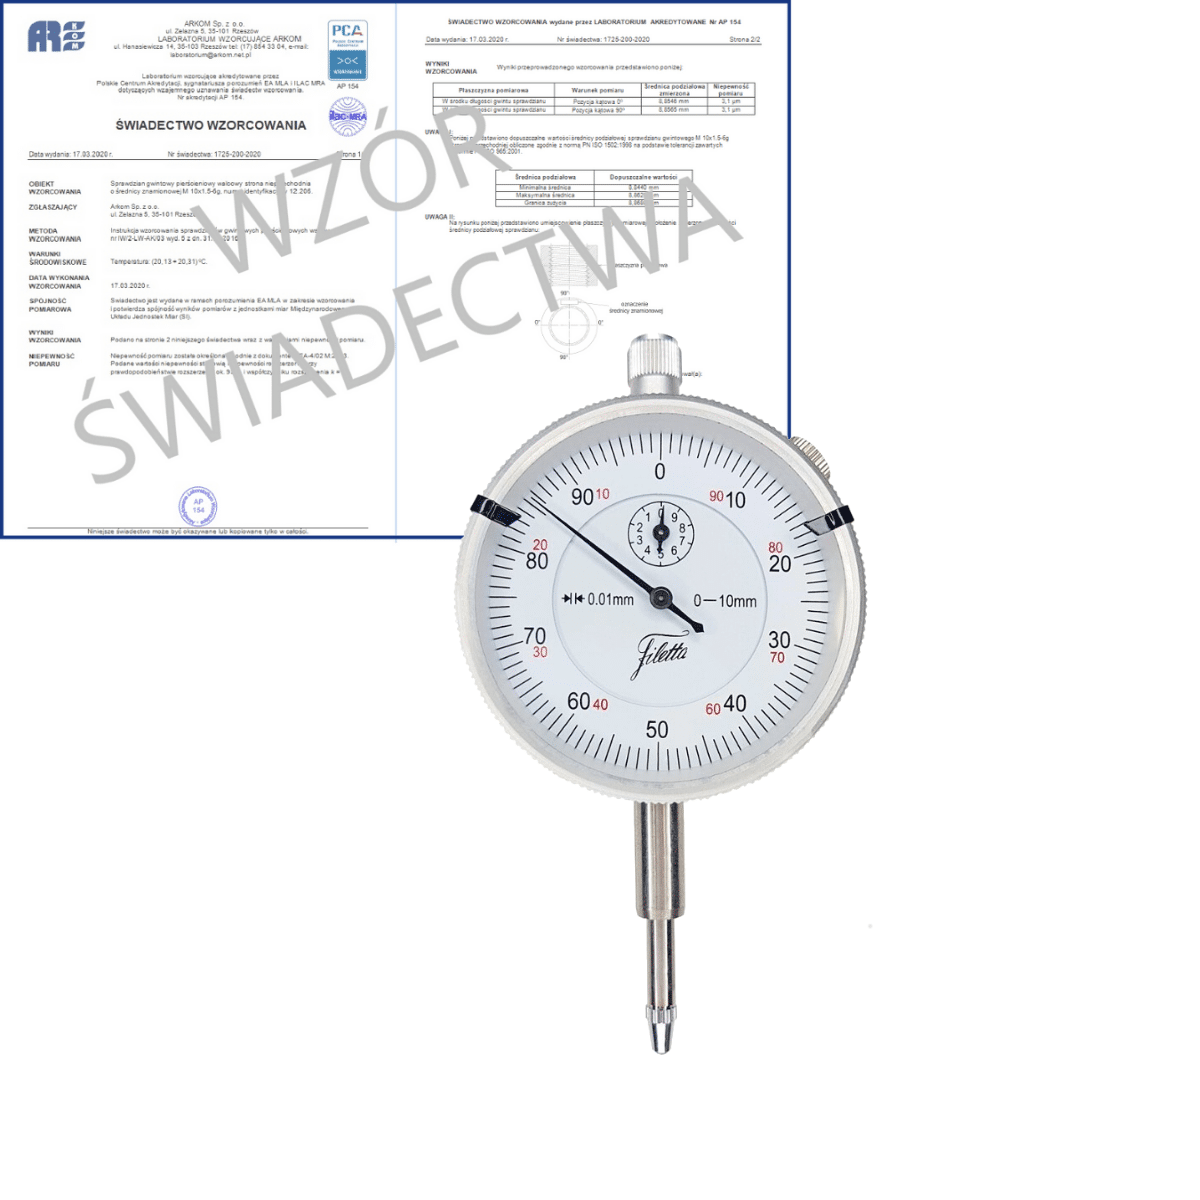 SCHUT czujnik zegarowy wstrząsoodporny 0-10/0.01 mm + świadectwo wzorcowania PCA  907.933 WZORC (Zdjęcie 1)